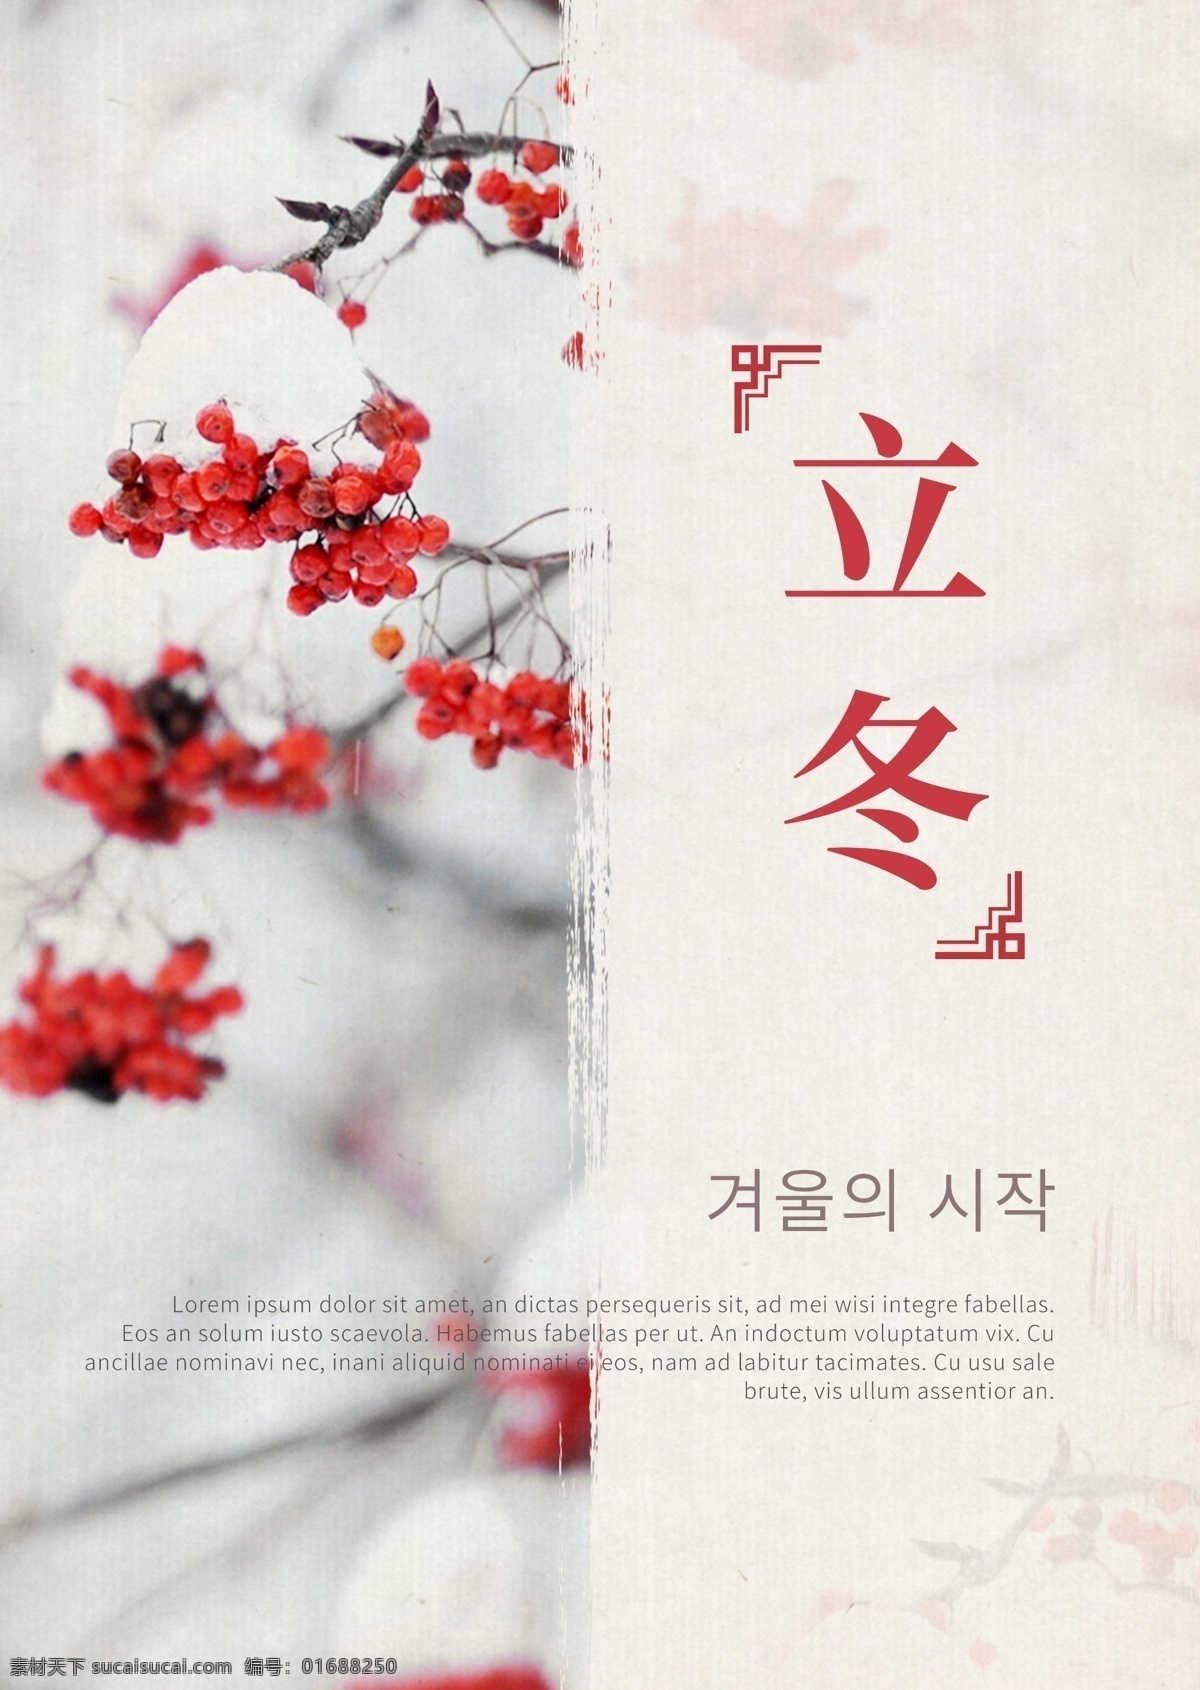 白色 红色 果子 时尚 冬天 海报 简单 景观 墨 冬季 红色水果 朝鲜的 中文 英语